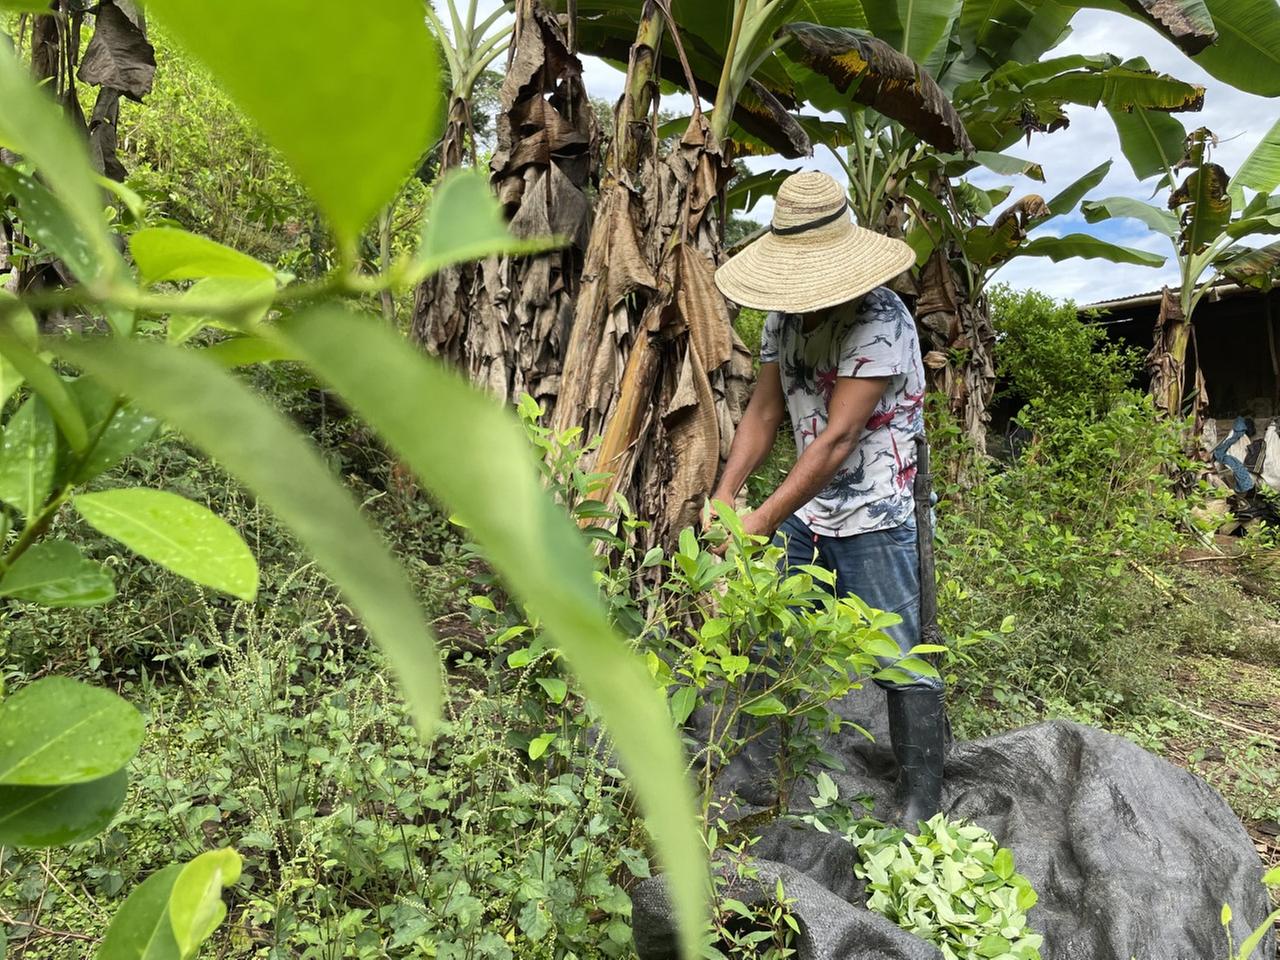 Ein Kokabauer mit einem Sombrero auf dem Kopf, welcher sein Gesicht verdeckt, steht inmitten von Bananenstauden und bearbeitet Kokapflanzen.